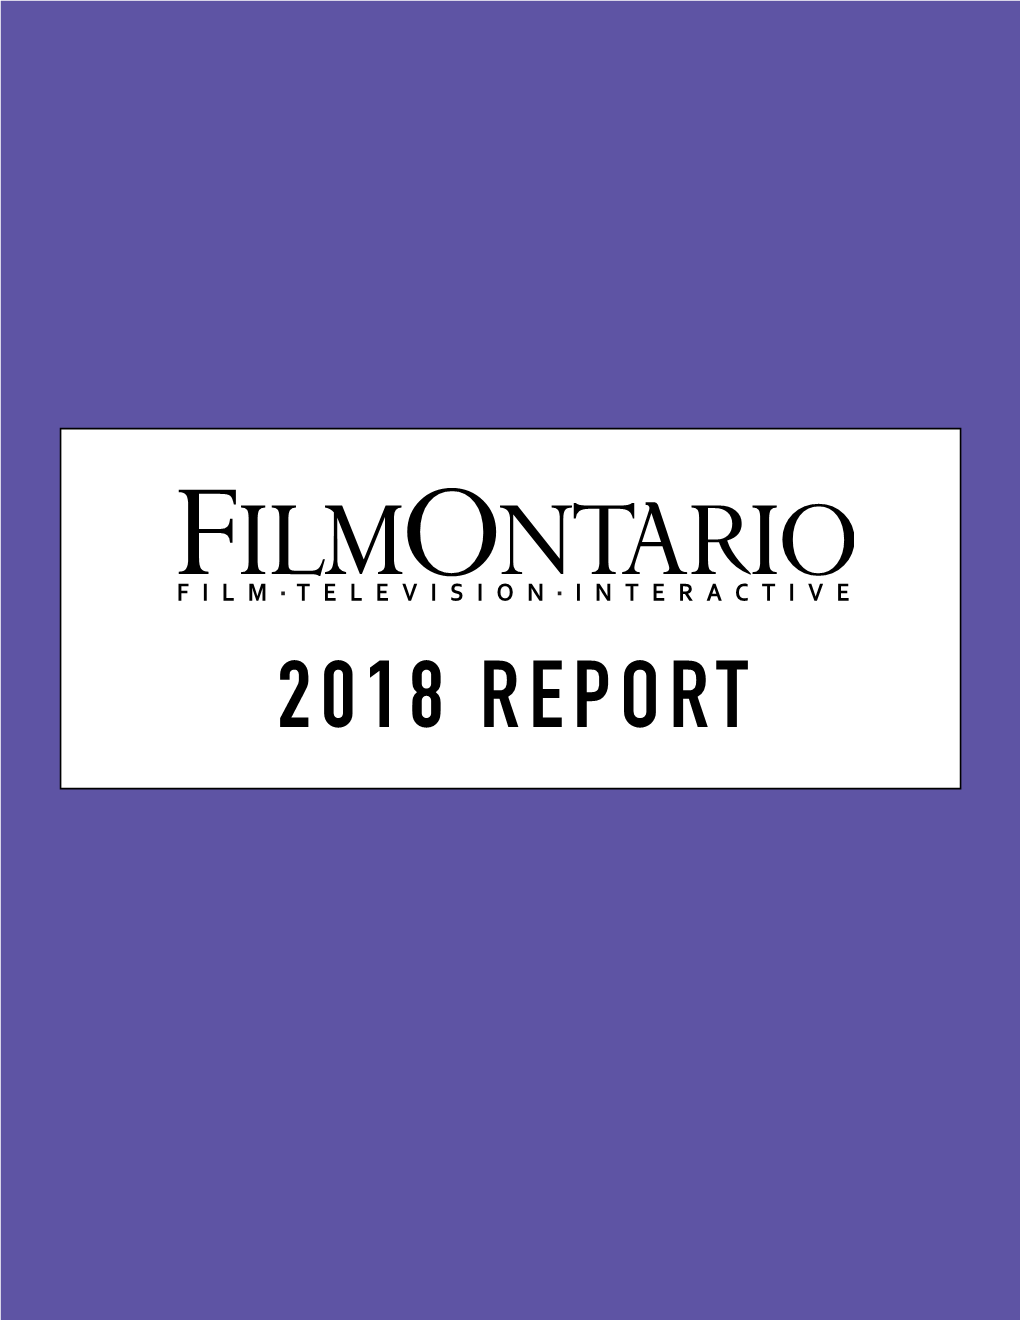 2018 REPORT 2018 REPORT Dear Filmontario Members